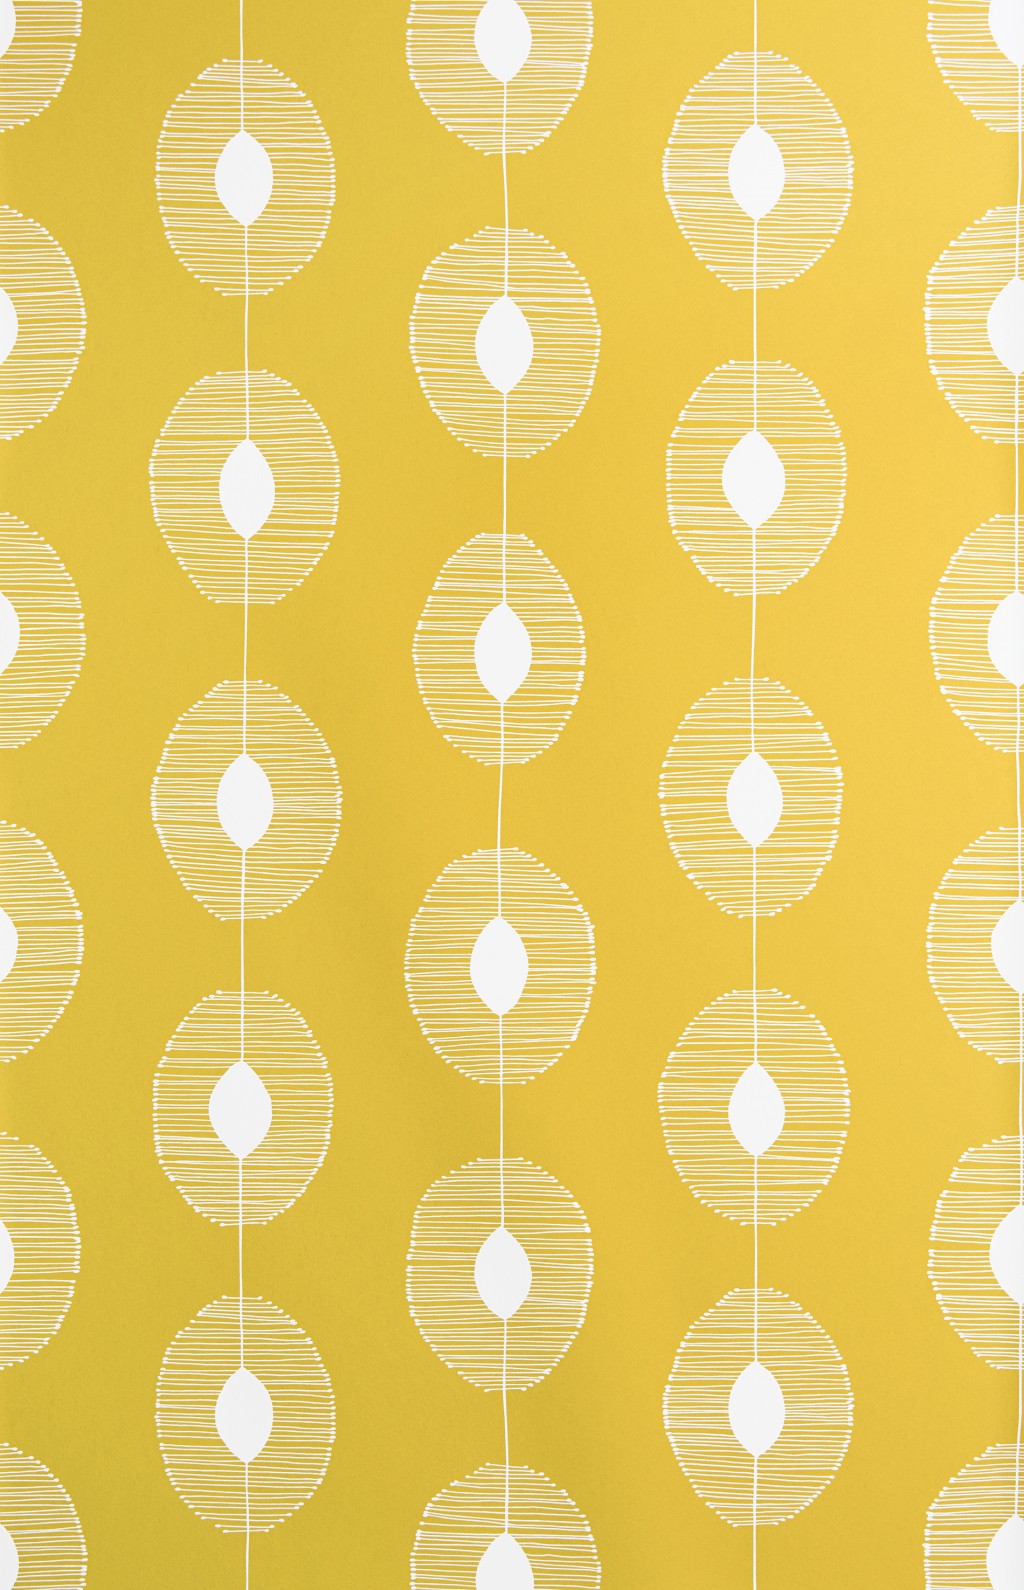 DEWDROPS Citron Wallpaper